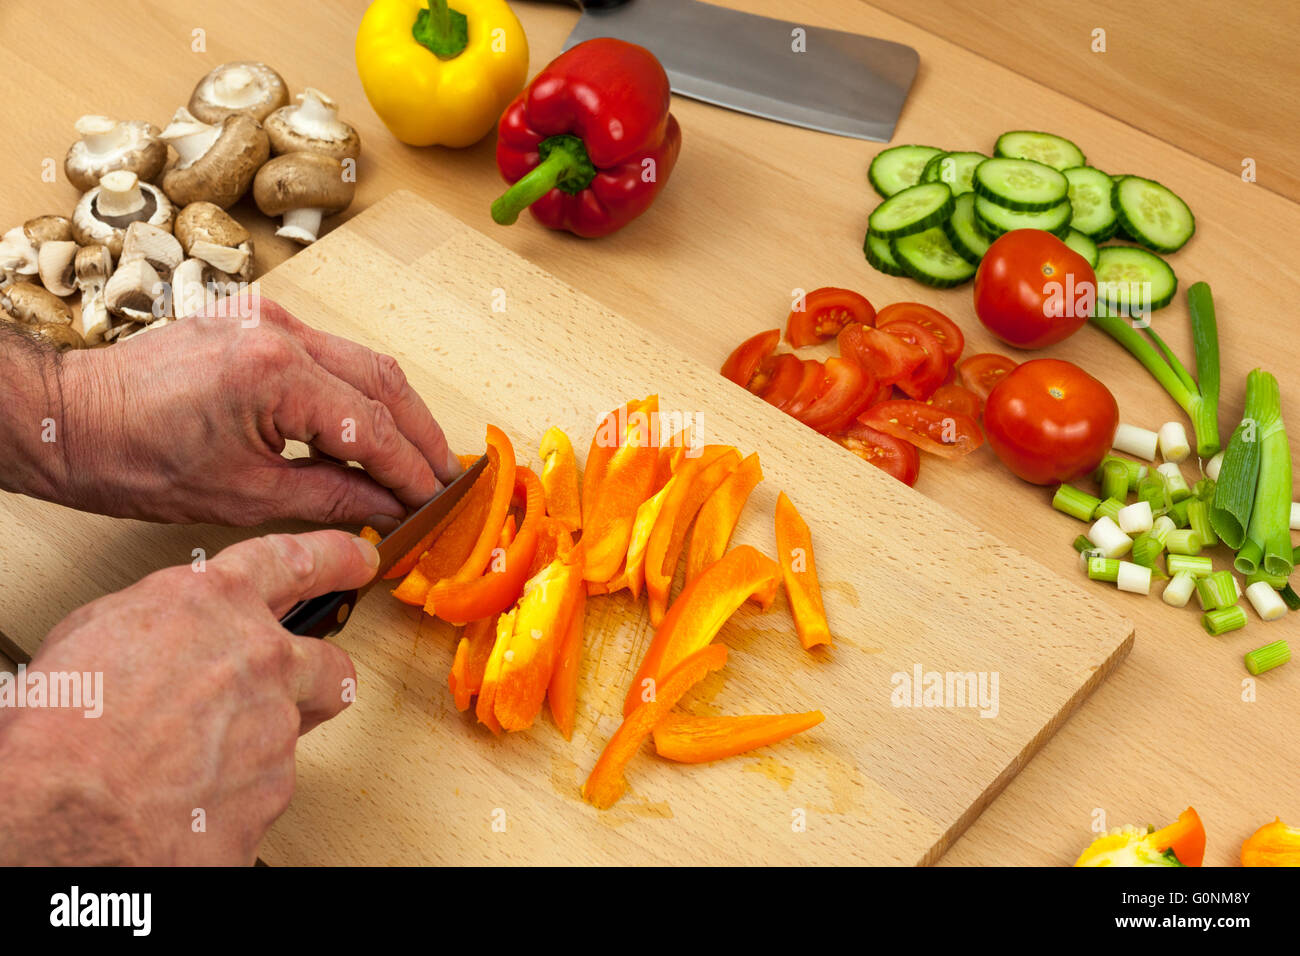 Gros plan d'un découpage des mains de chefs un poivron orange nettoyés sur une planche à découper en bois de côté une sélection de légumes hachés Banque D'Images